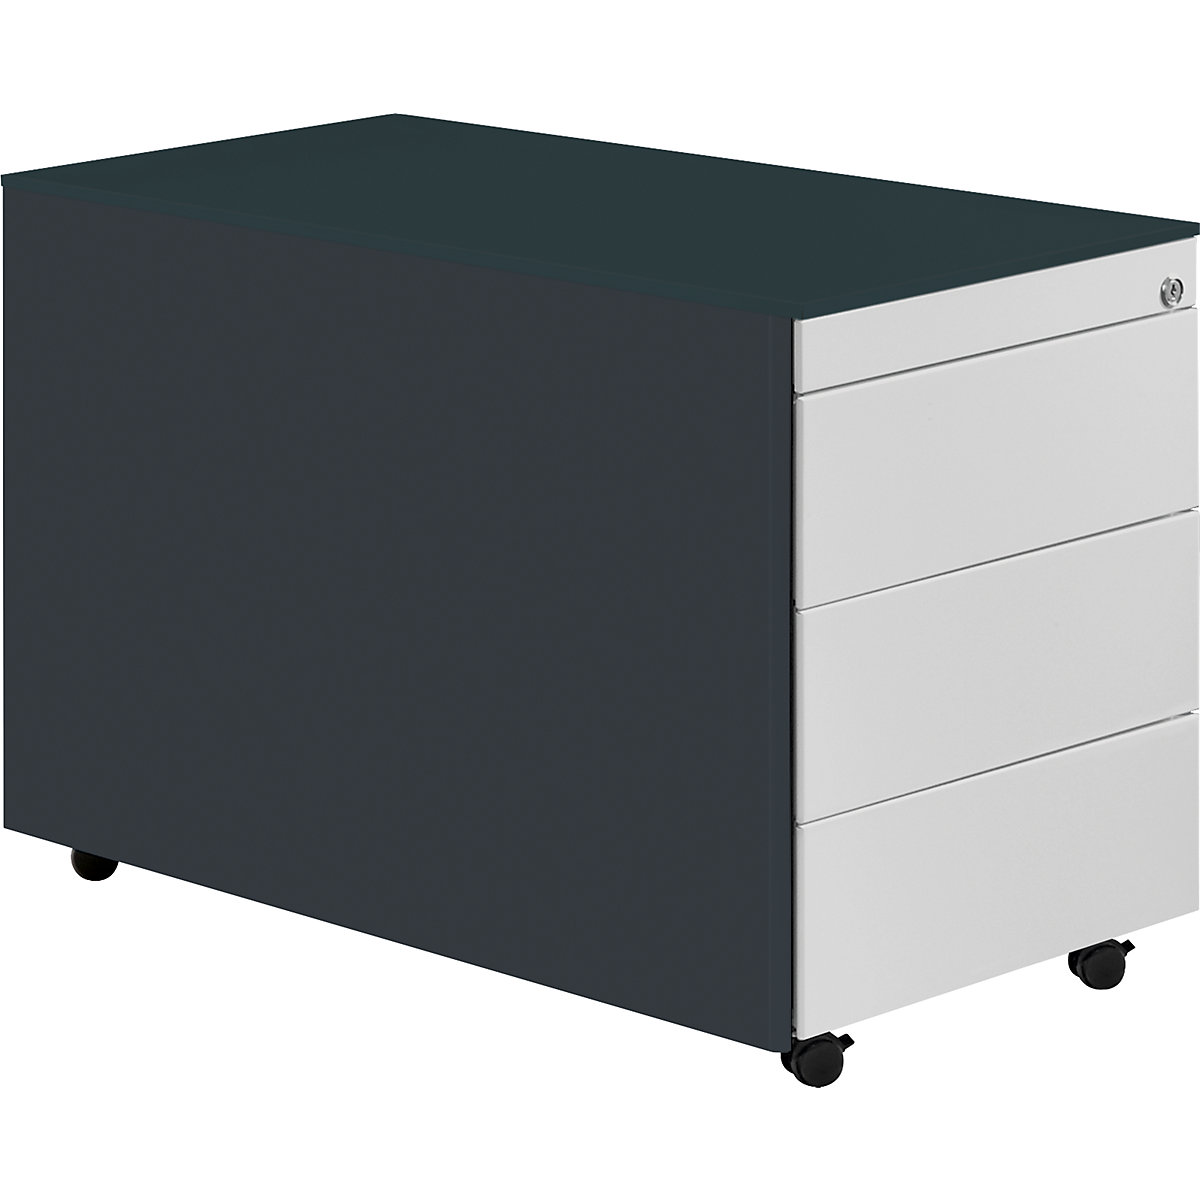 Zásuvkový kontajner s kolieskami – mauser, v x h 570 x 800 mm, oceľová doska, 3 zásuvky, antracitová / svetlošedá / antracitová-6